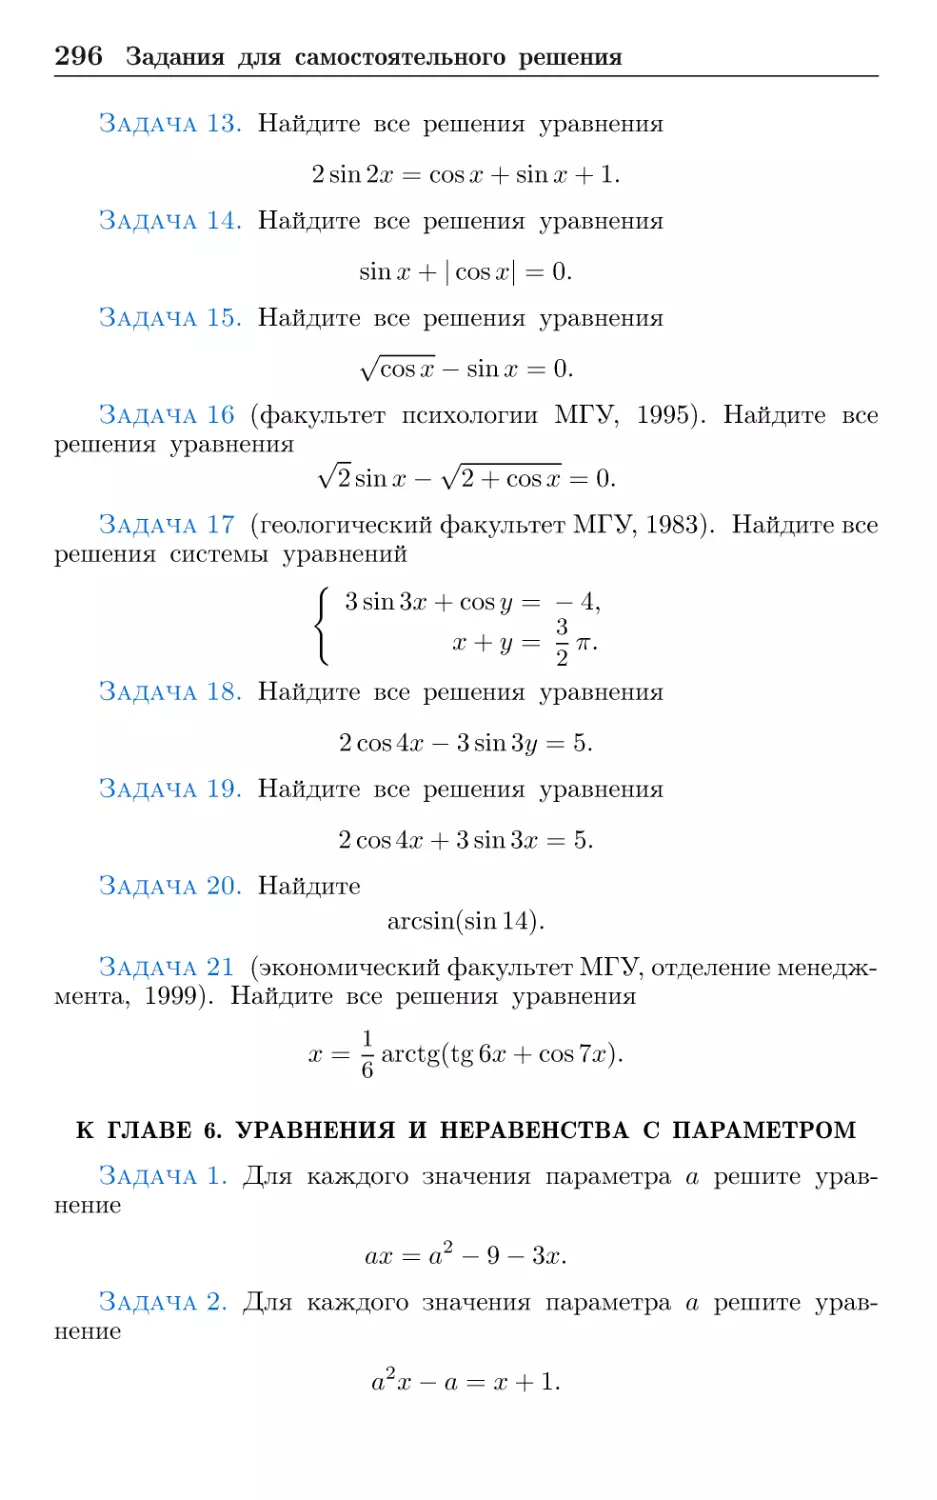 К главе 6. Уравнения и неравенства с параметром